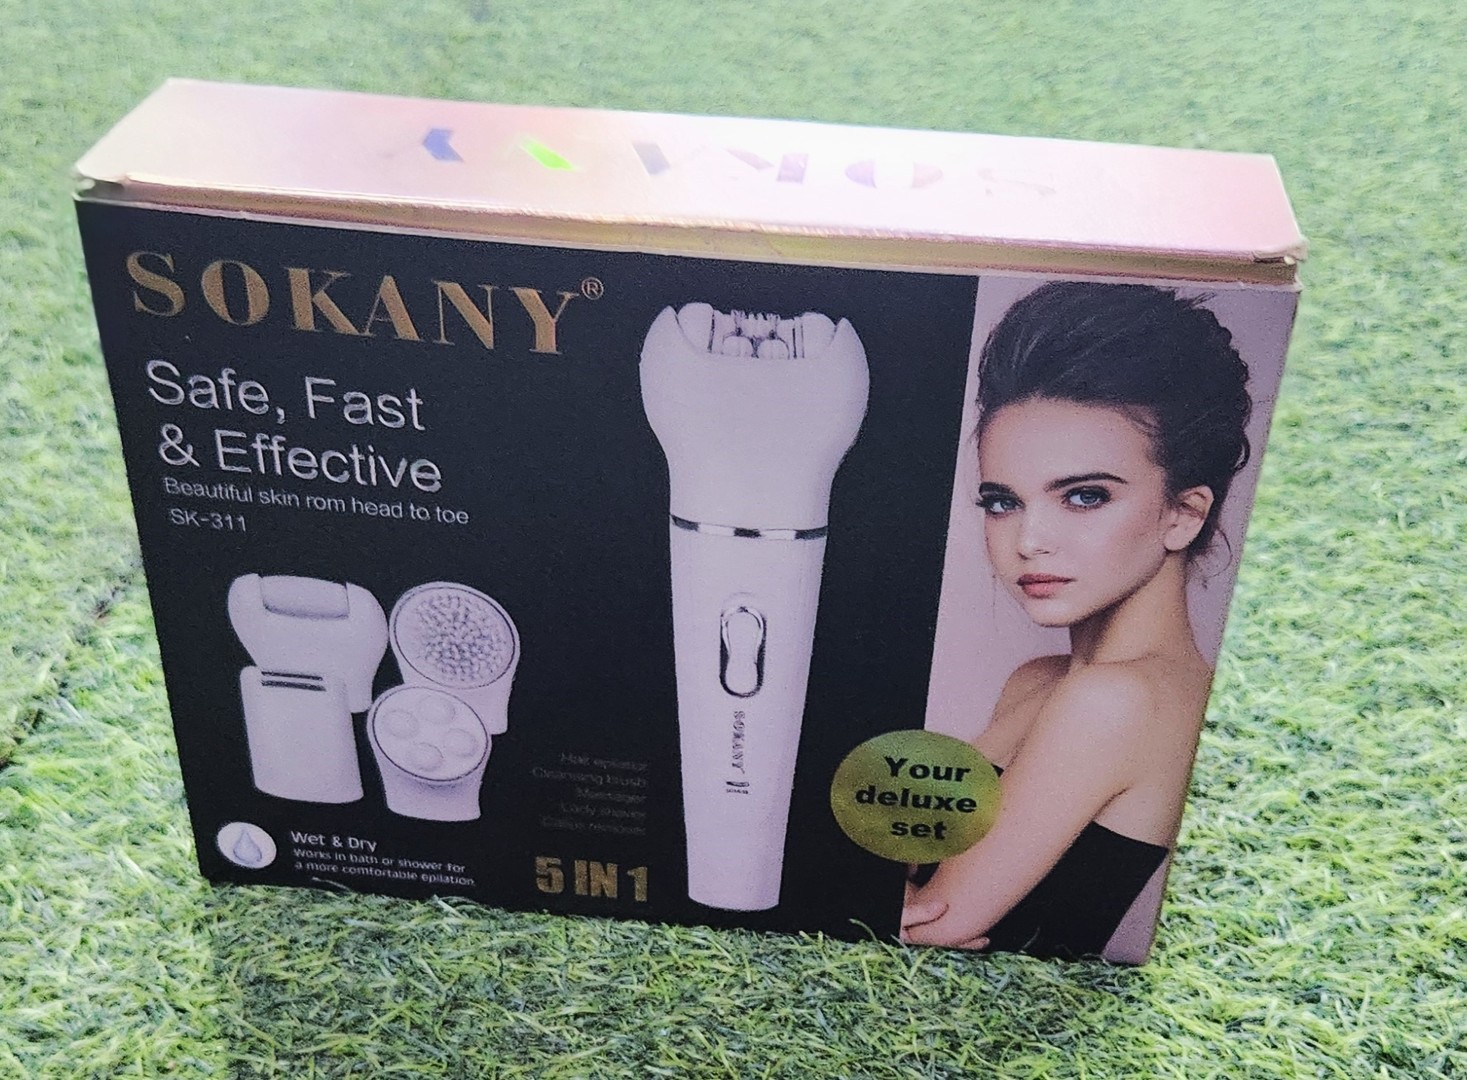 salud y belleza - sokany kit de belleza 5 en 1 cepillo facial depiladora masajeador. 1